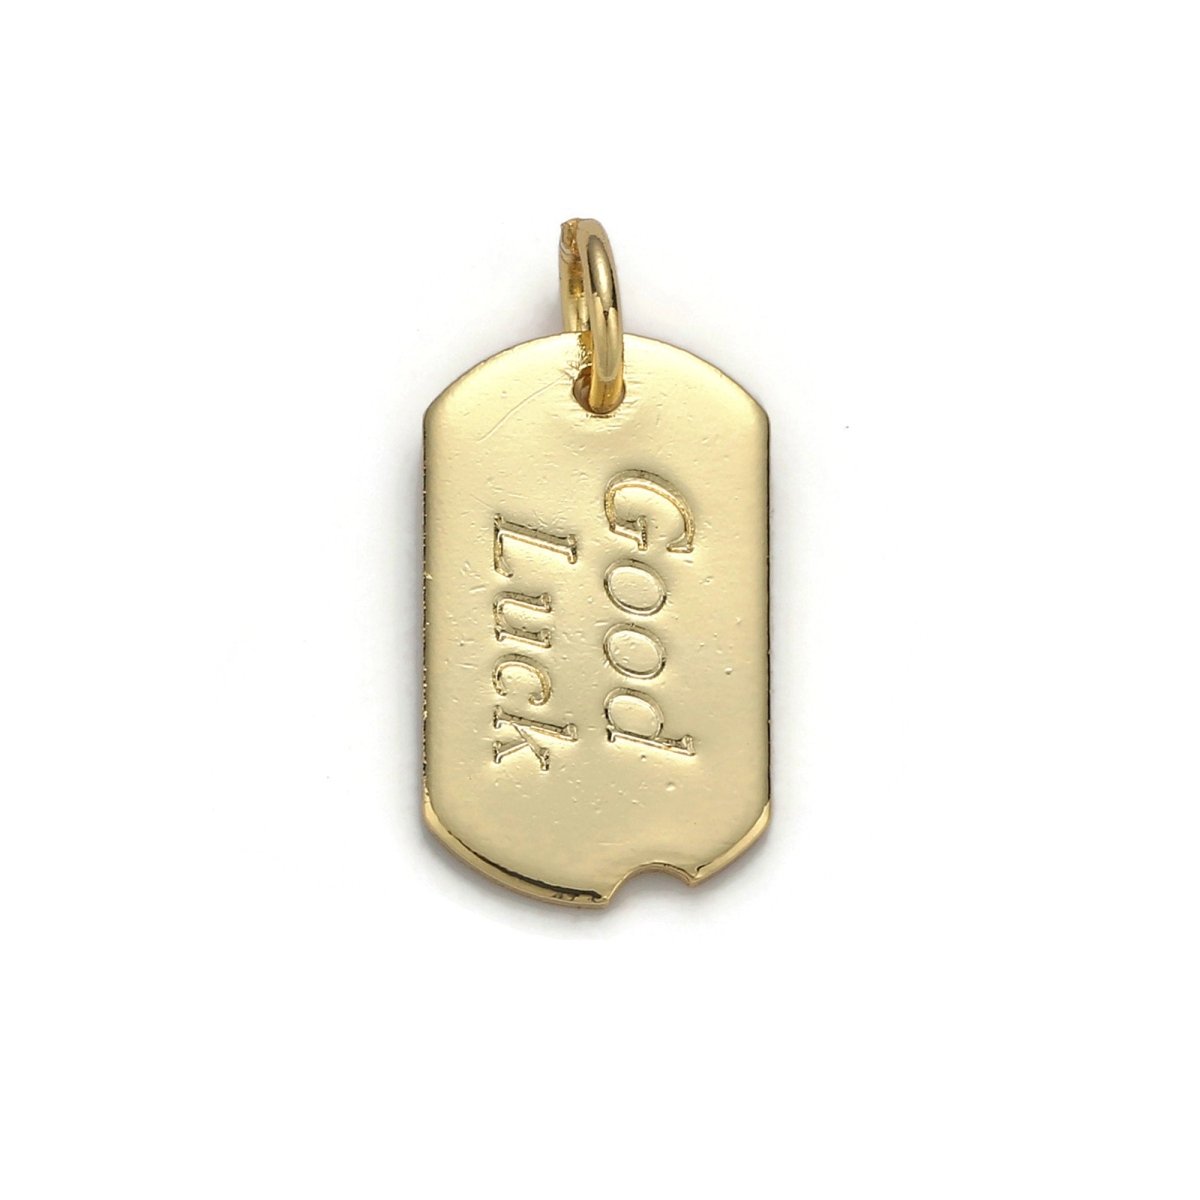 24k Gold Filled Good Luck Charm, Bar Plate Good Luck Pendant Charm, Gold Filled Charm, Gold / Silver Color Option D-045 - DLUXCA